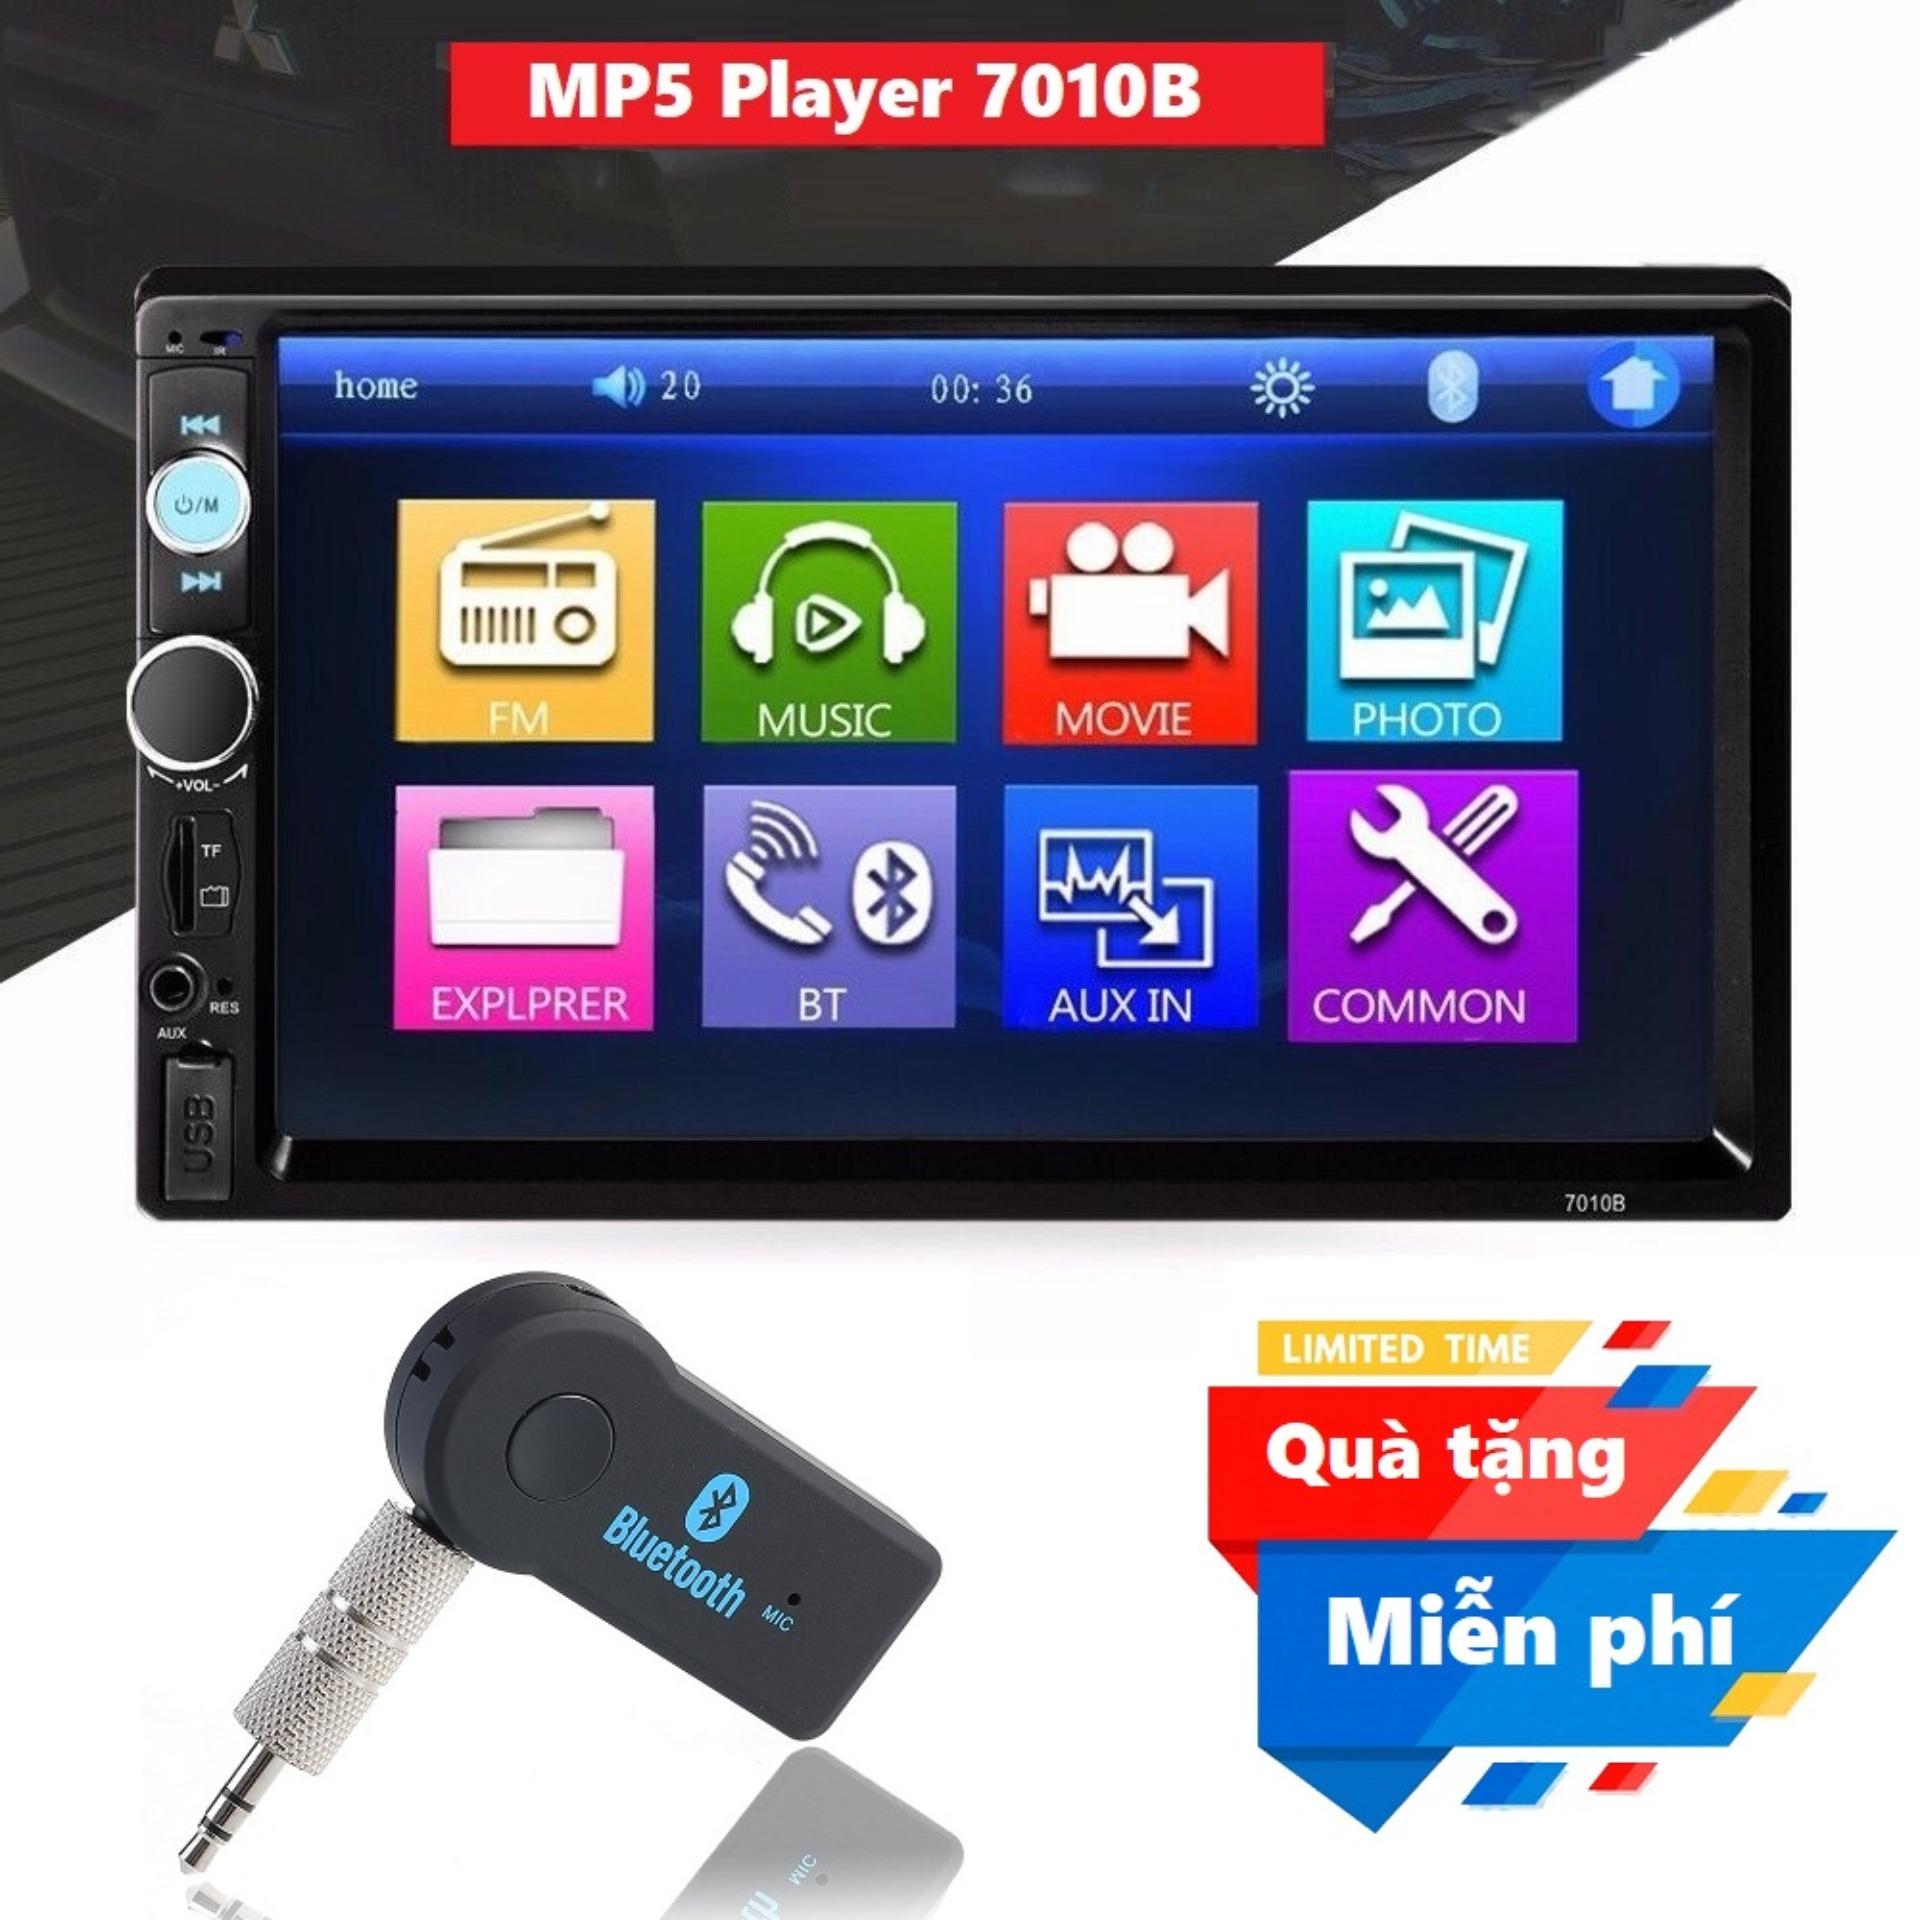 Màn hình 7 inch ô tô 2 din Mp5 đa năng 7010B - MP5 Player 7010B cho ô tô màn hình cảm ứng Tặng kèm Bộ thu nhạc Bluetooth cho loa và tai nghe